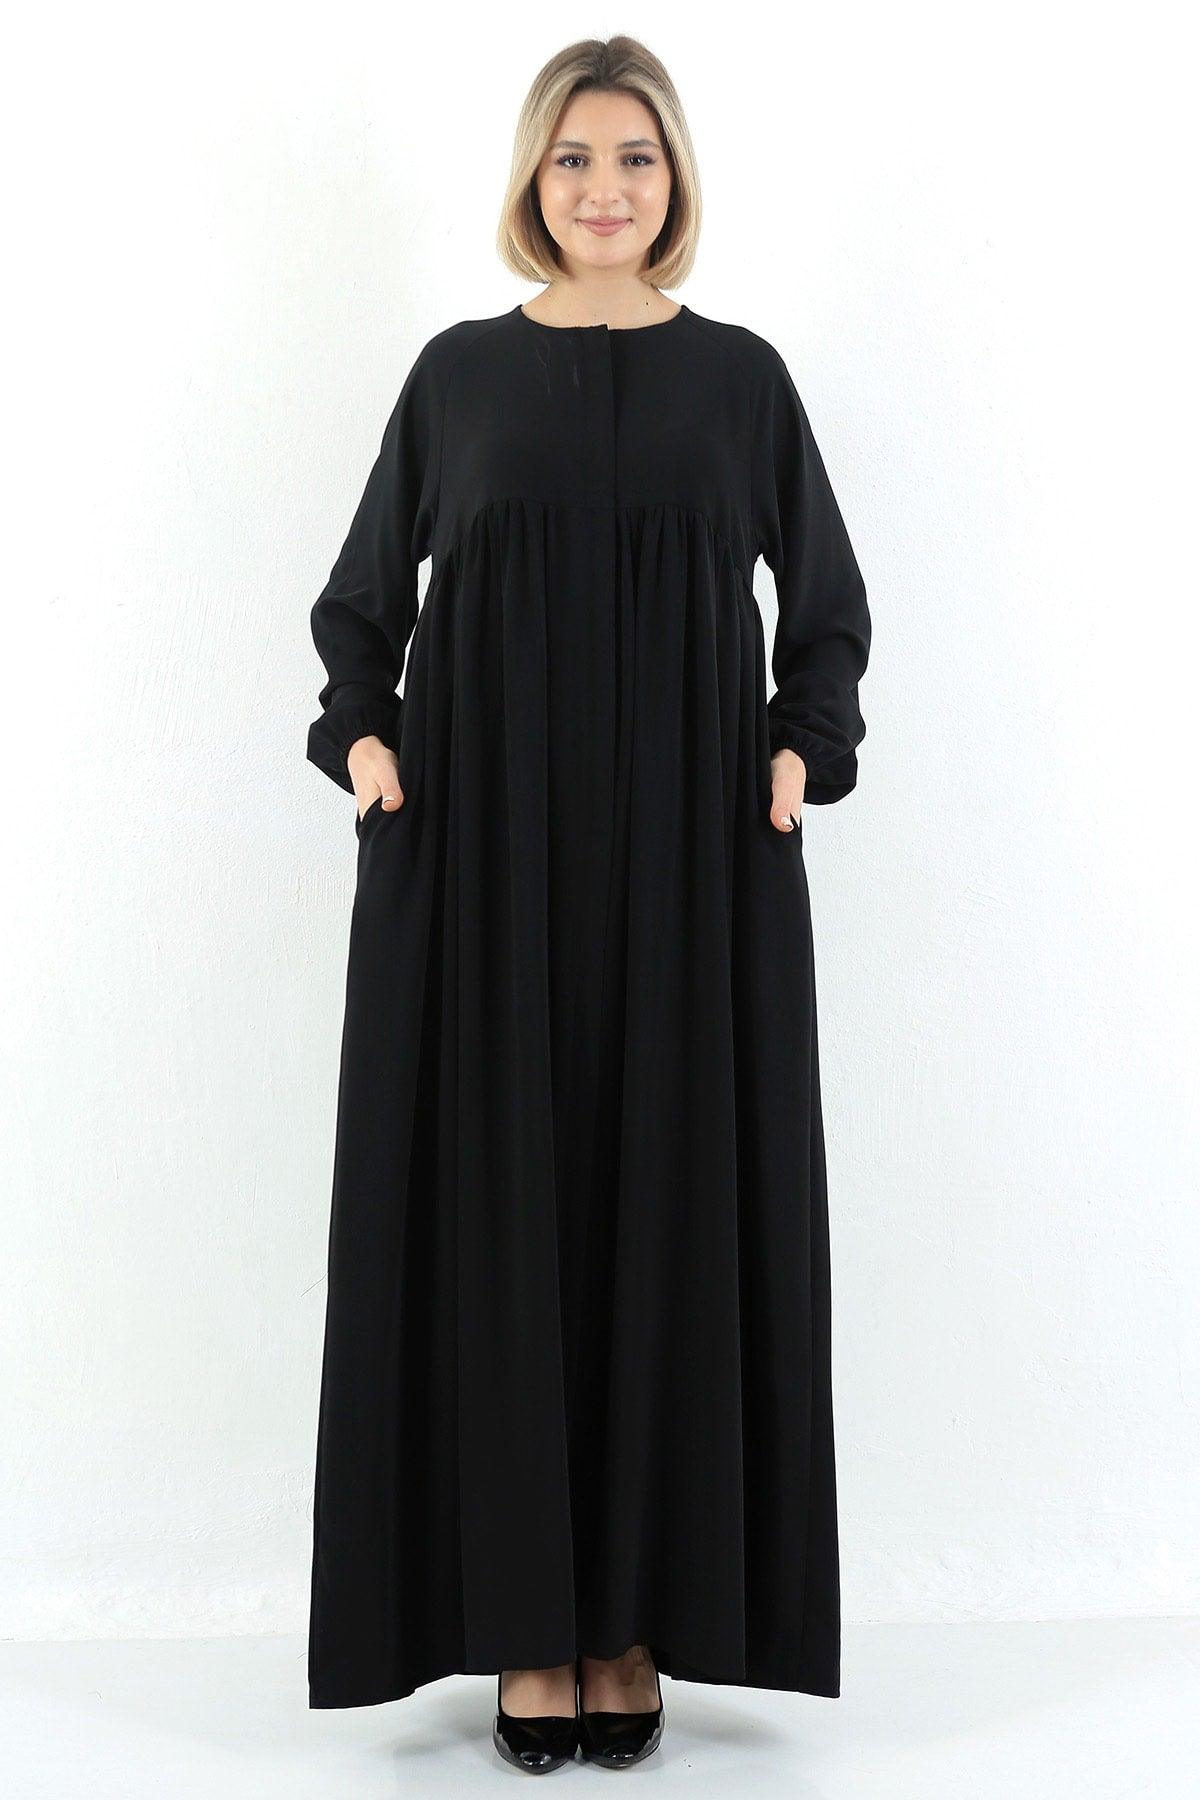 Black Oversized Zippered Pleated Robe Abaya Hijab - Swordslife